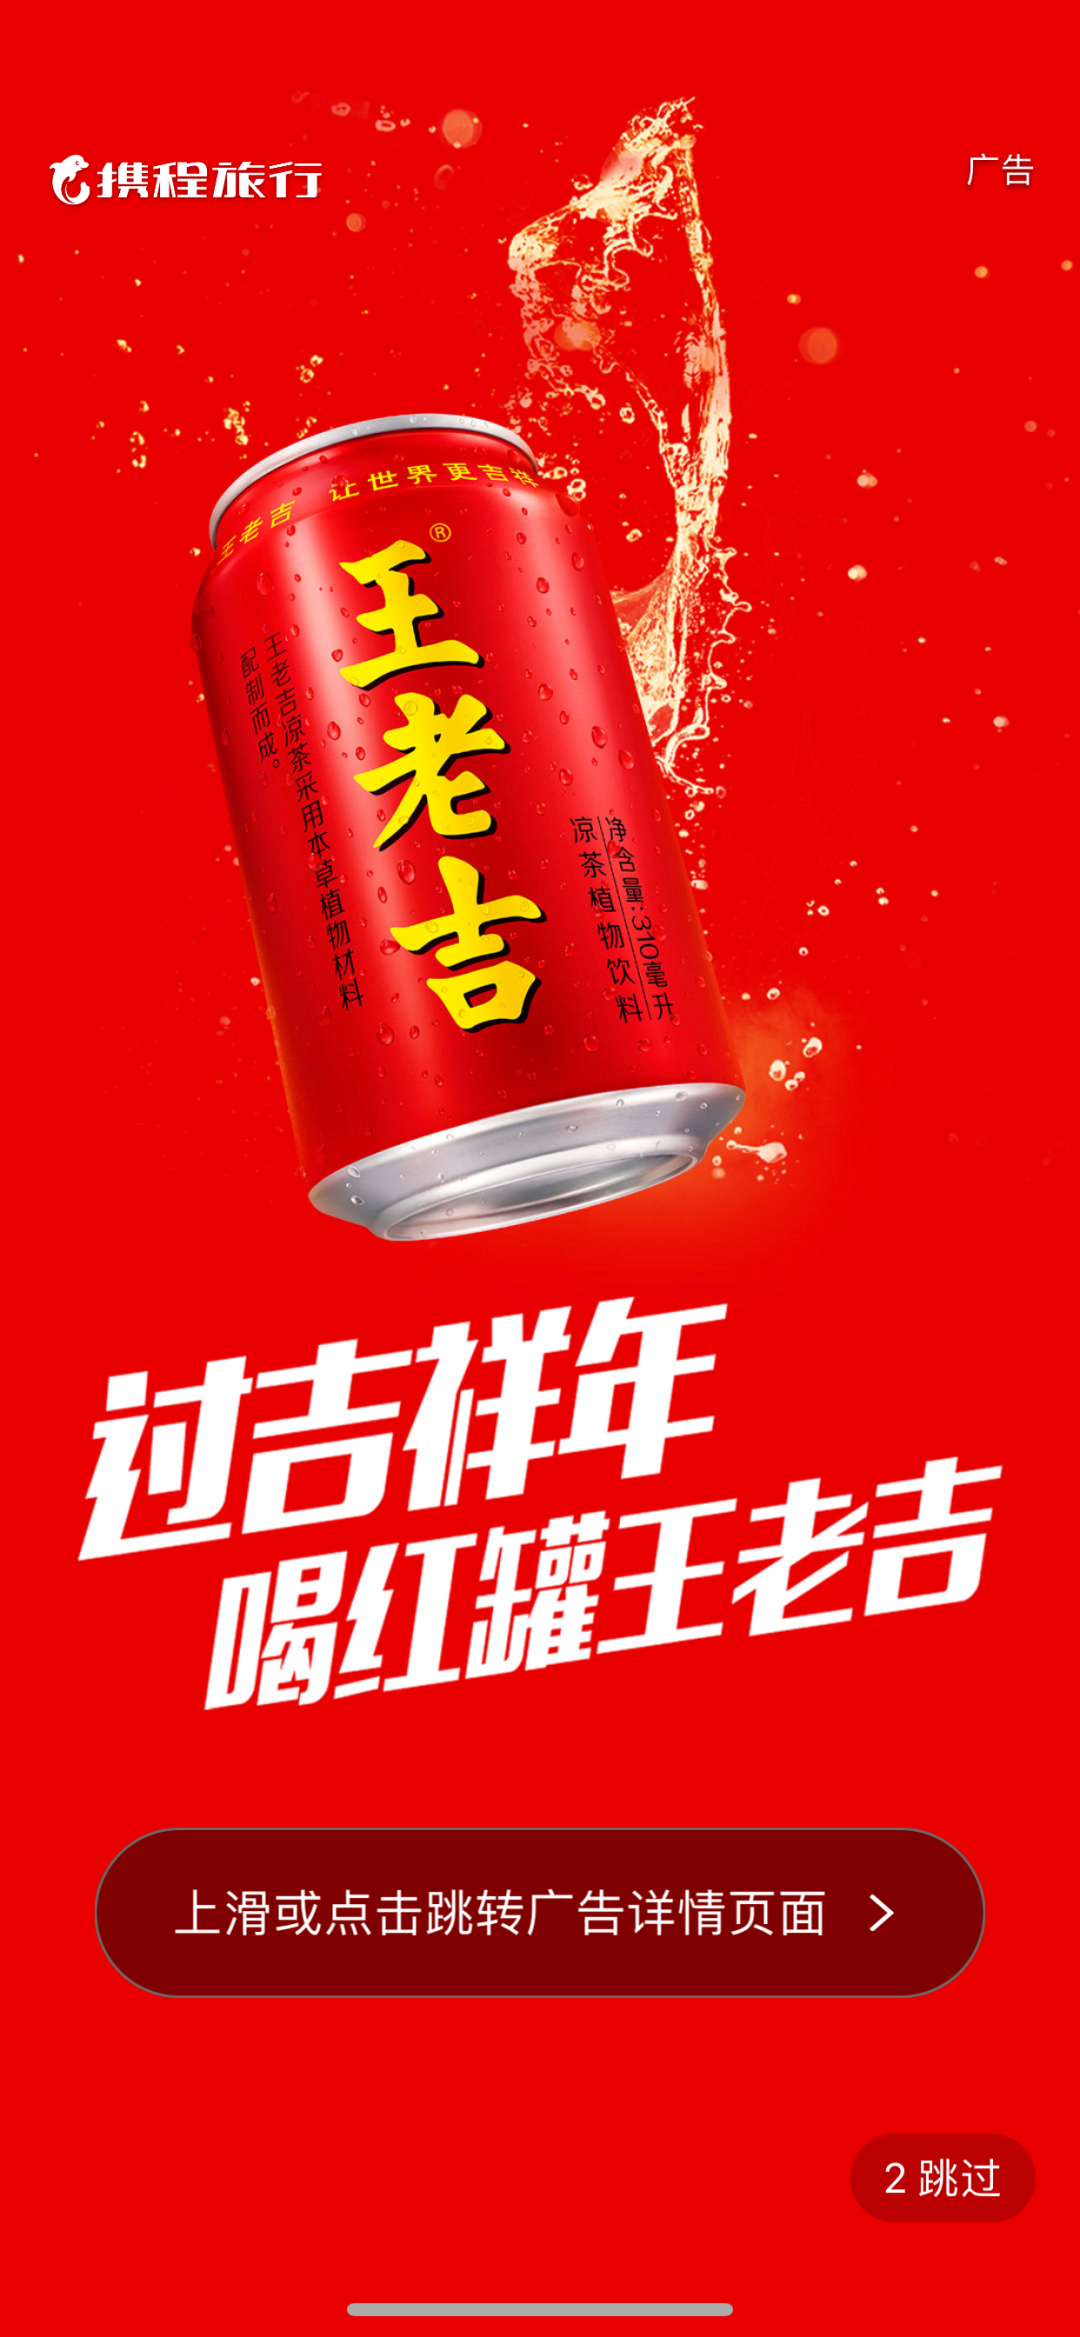 王老吉新年广告2021图片